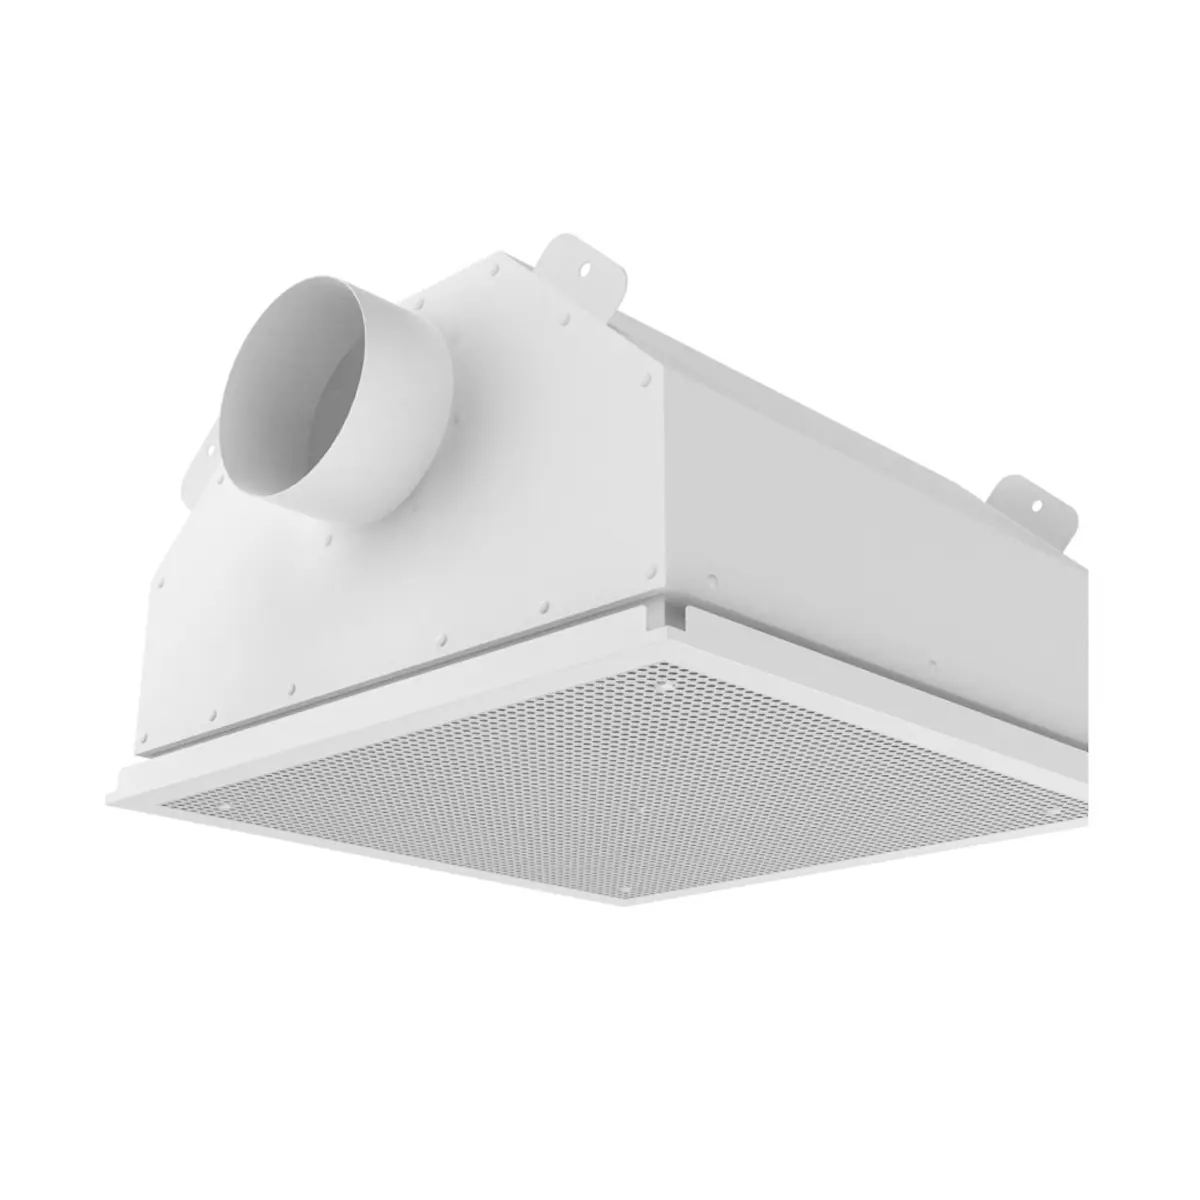 Grande qualité 2022 production Boîte de filtre à air de plafond pour les salles blanches sur clip-in montage fournisseur fiable